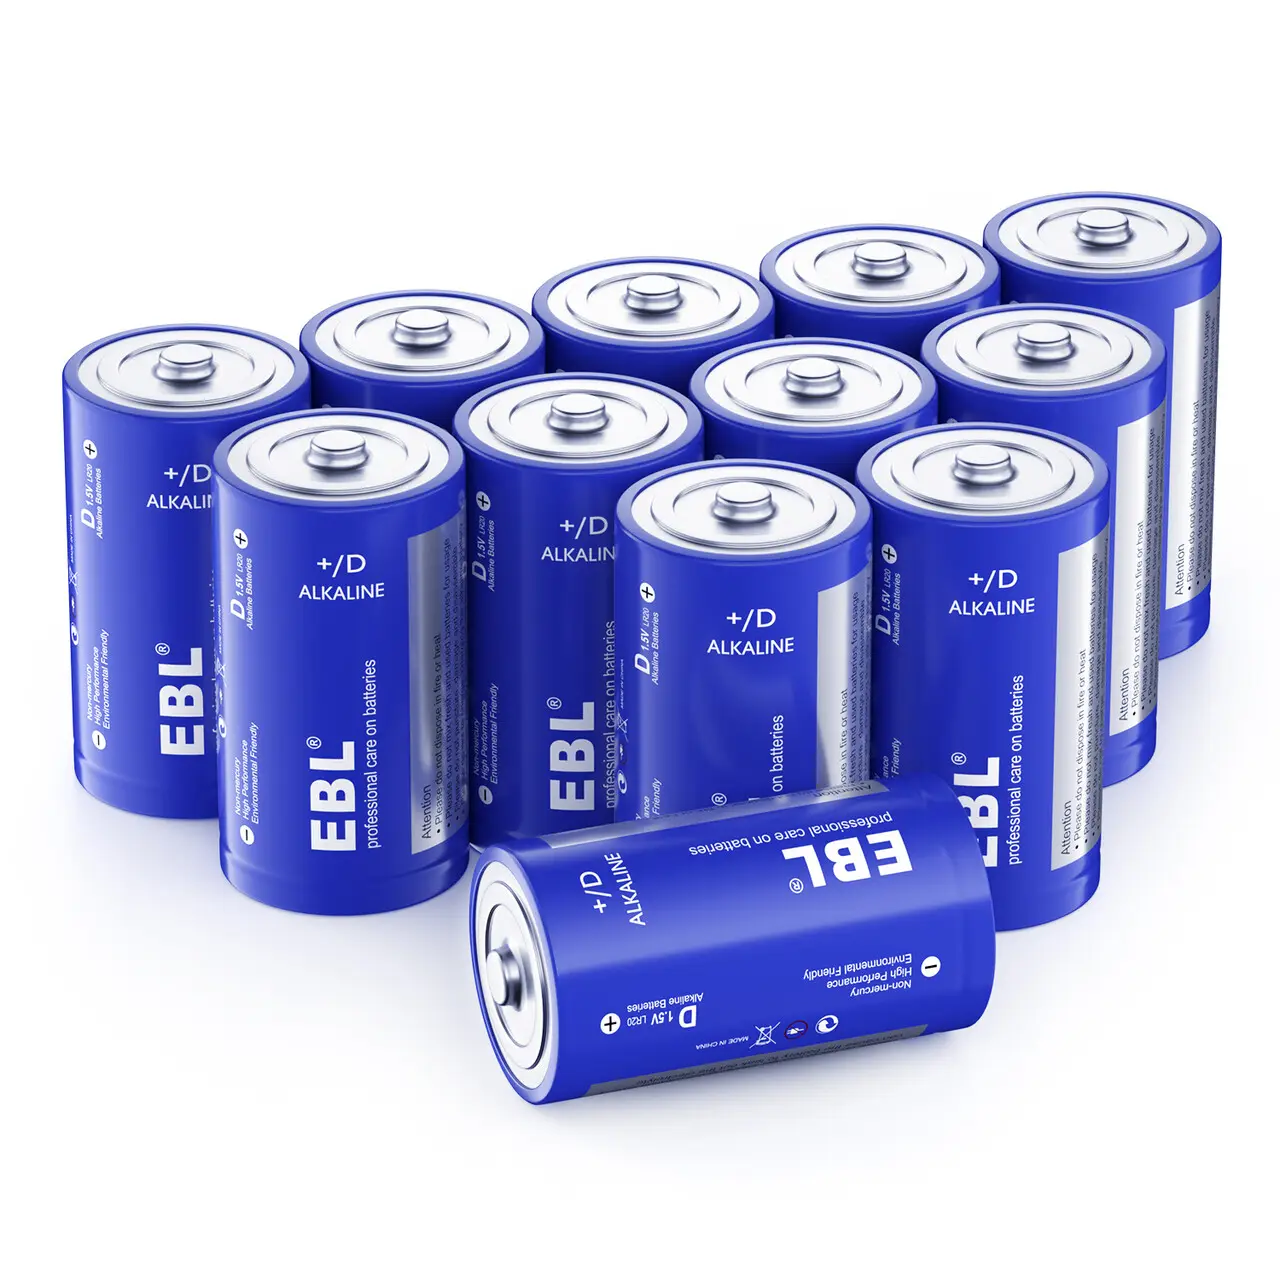 EBL grosir baterai kapasitas tinggi ukuran D LR20 20000mAh sel baterai 1.5V paket baterai utama Alkaline kering